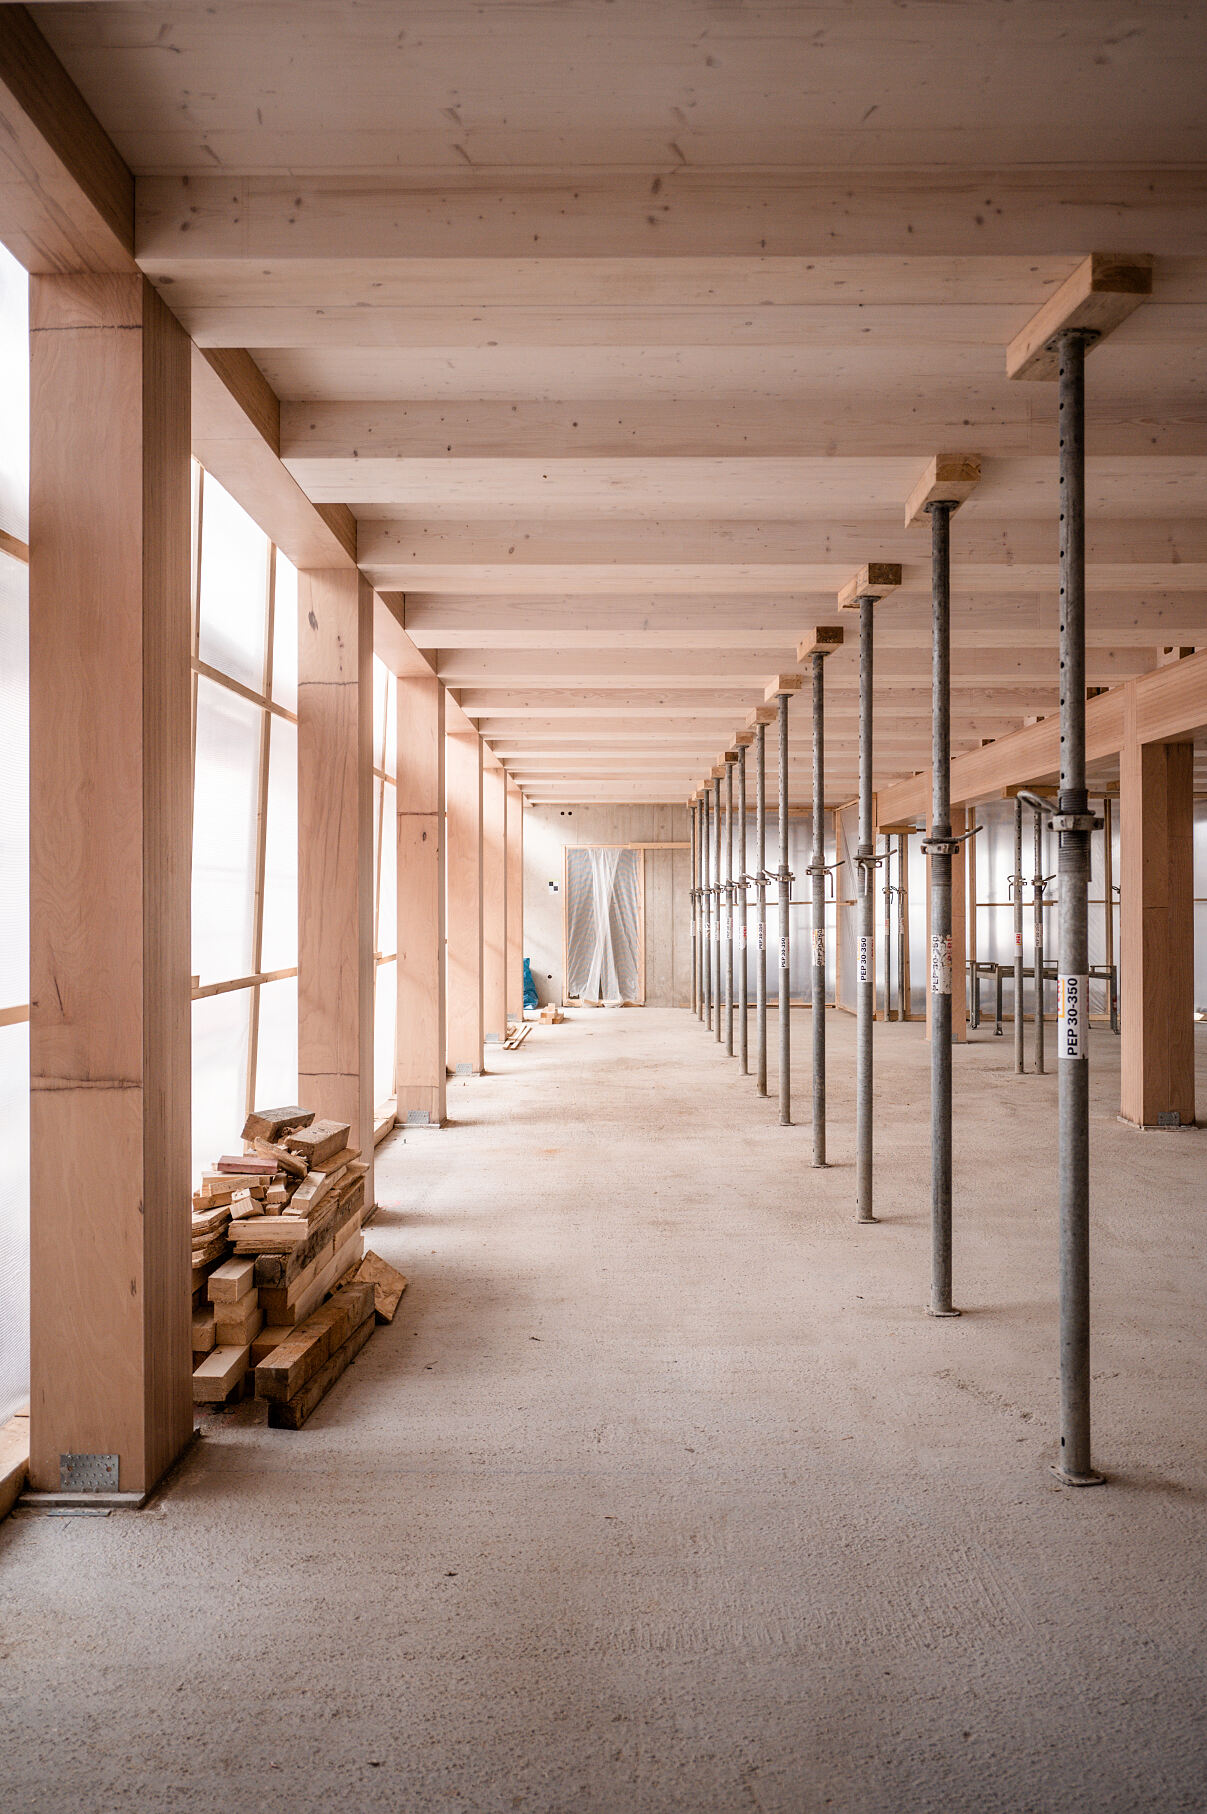 Die strukturelle Eleganz des TRI, eingefangen in der Flucht der Holzstützen, die eine neue Ära der Büroarchitektur in München einläuten.